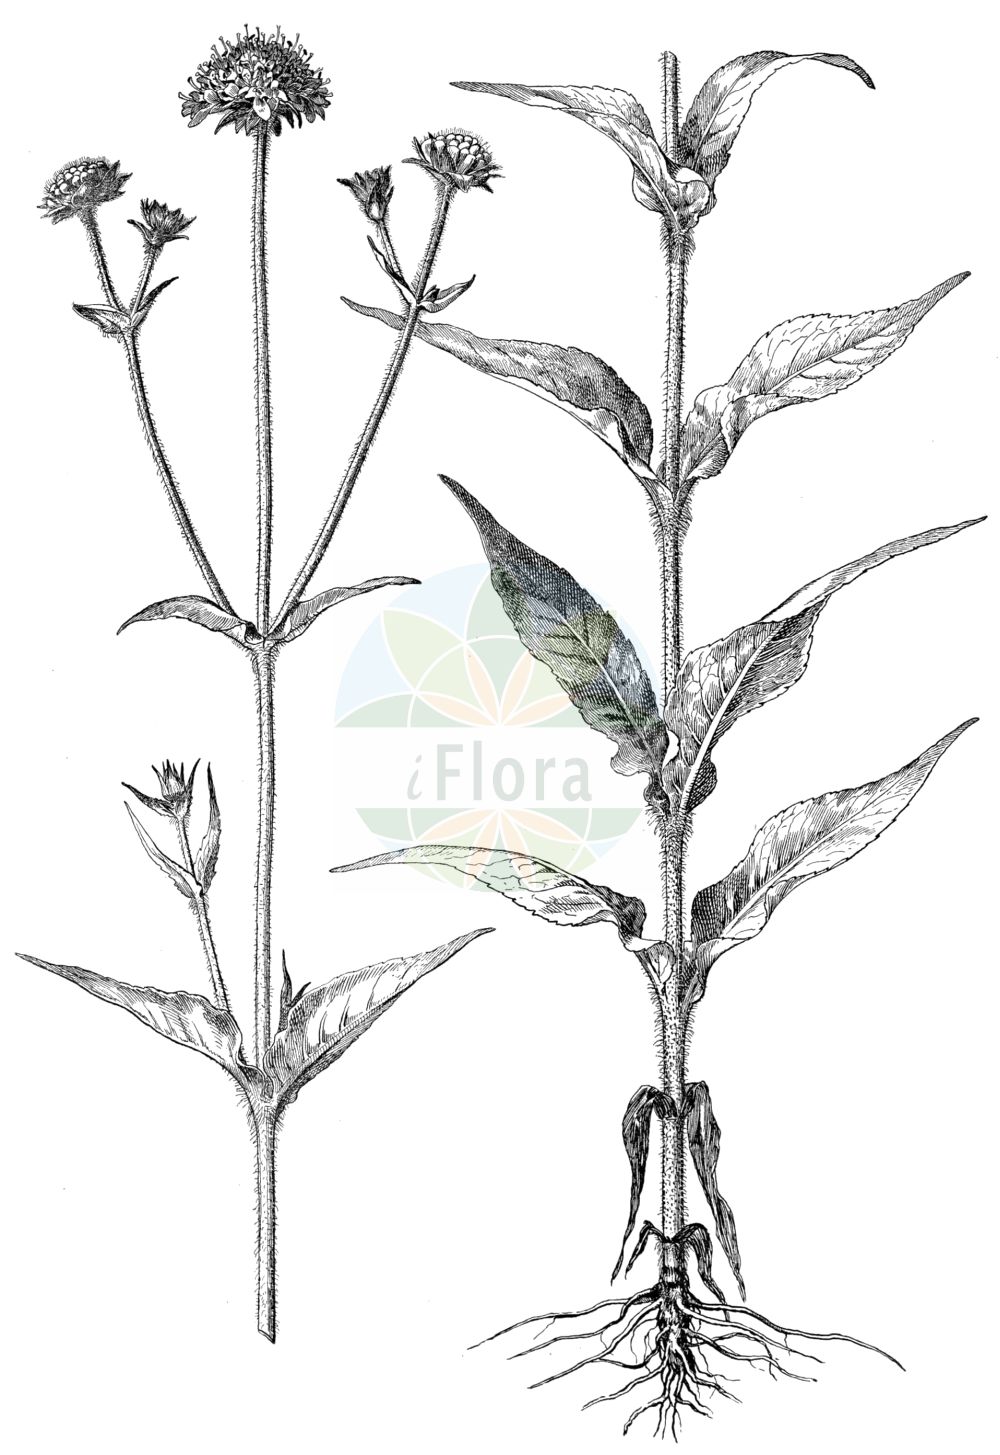 Historische Abbildung von Knautia dipsacifolia (Wald-Witwenblume). Das Bild zeigt Blatt, Bluete, Frucht und Same. ---- Historical Drawing of Knautia dipsacifolia (Wald-Witwenblume). The image is showing leaf, flower, fruit and seed.(Knautia dipsacifolia,Wald-Witwenblume,Knautia chabertii,Knautia dipsacifolia,Knautia sylvatica,Knautia sylvatica (L.) Duby,Scabiosa dipsacifolia,Trichera sylvatica,Wald-Witwenblume,Knautia,Witwenblume,Scabious,Caprifoliaceae,Geißblattgewächse,Honeysuckle family,Blatt,Bluete,Frucht,Same,leaf,flower,fruit,seed,Oltmanns (1927))